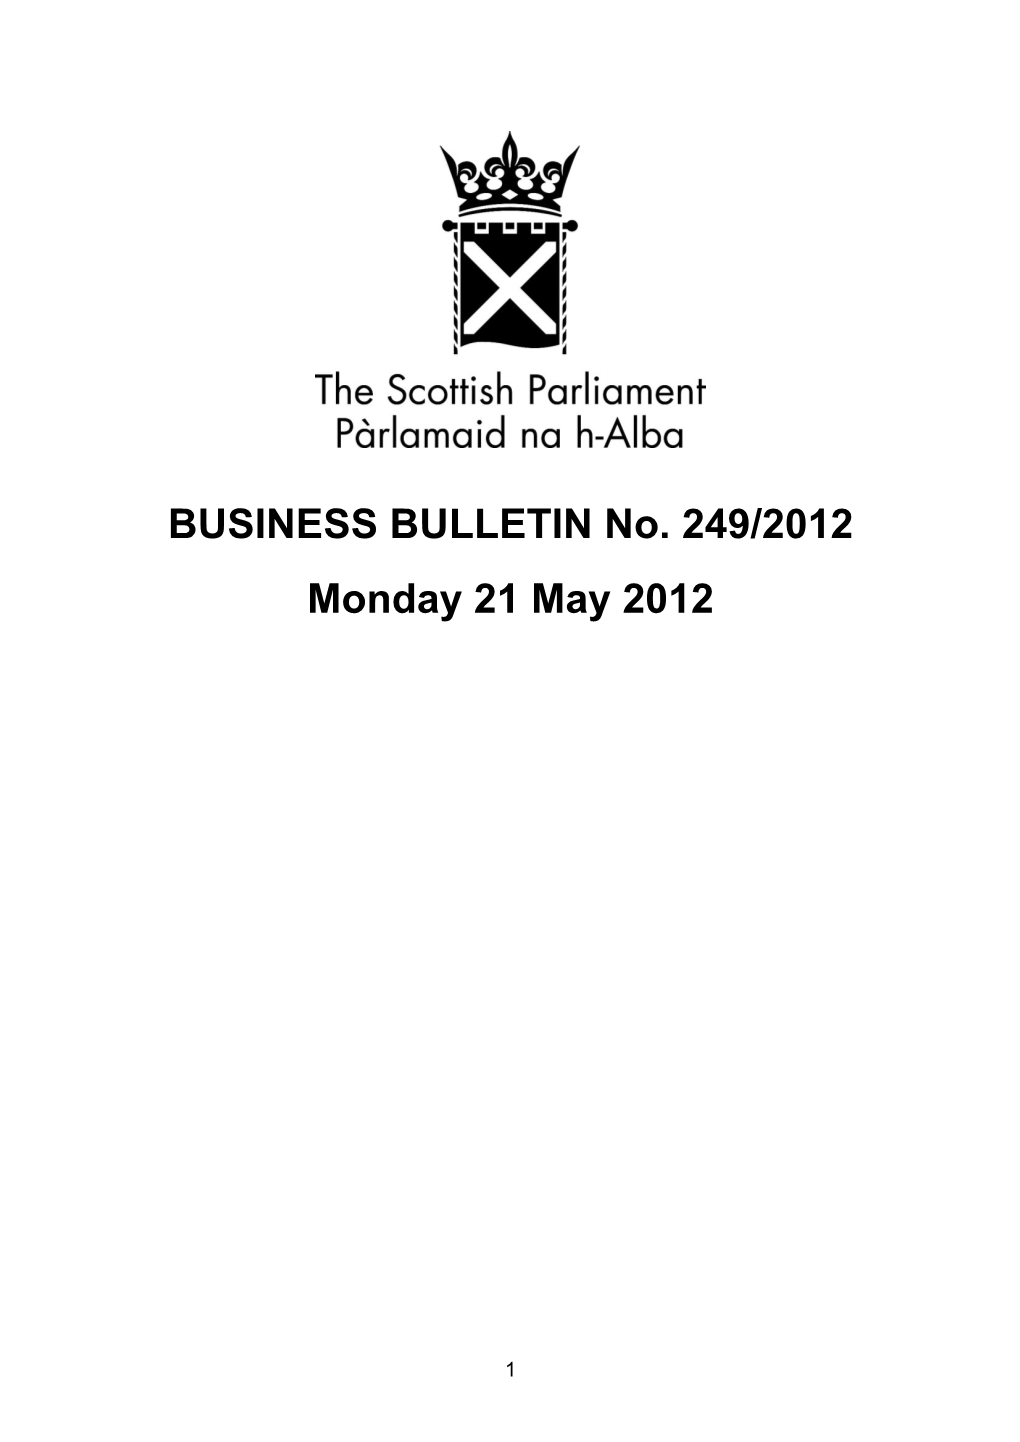 BUSINESS BULLETIN No. 249/2012 Monday 21 May 2012